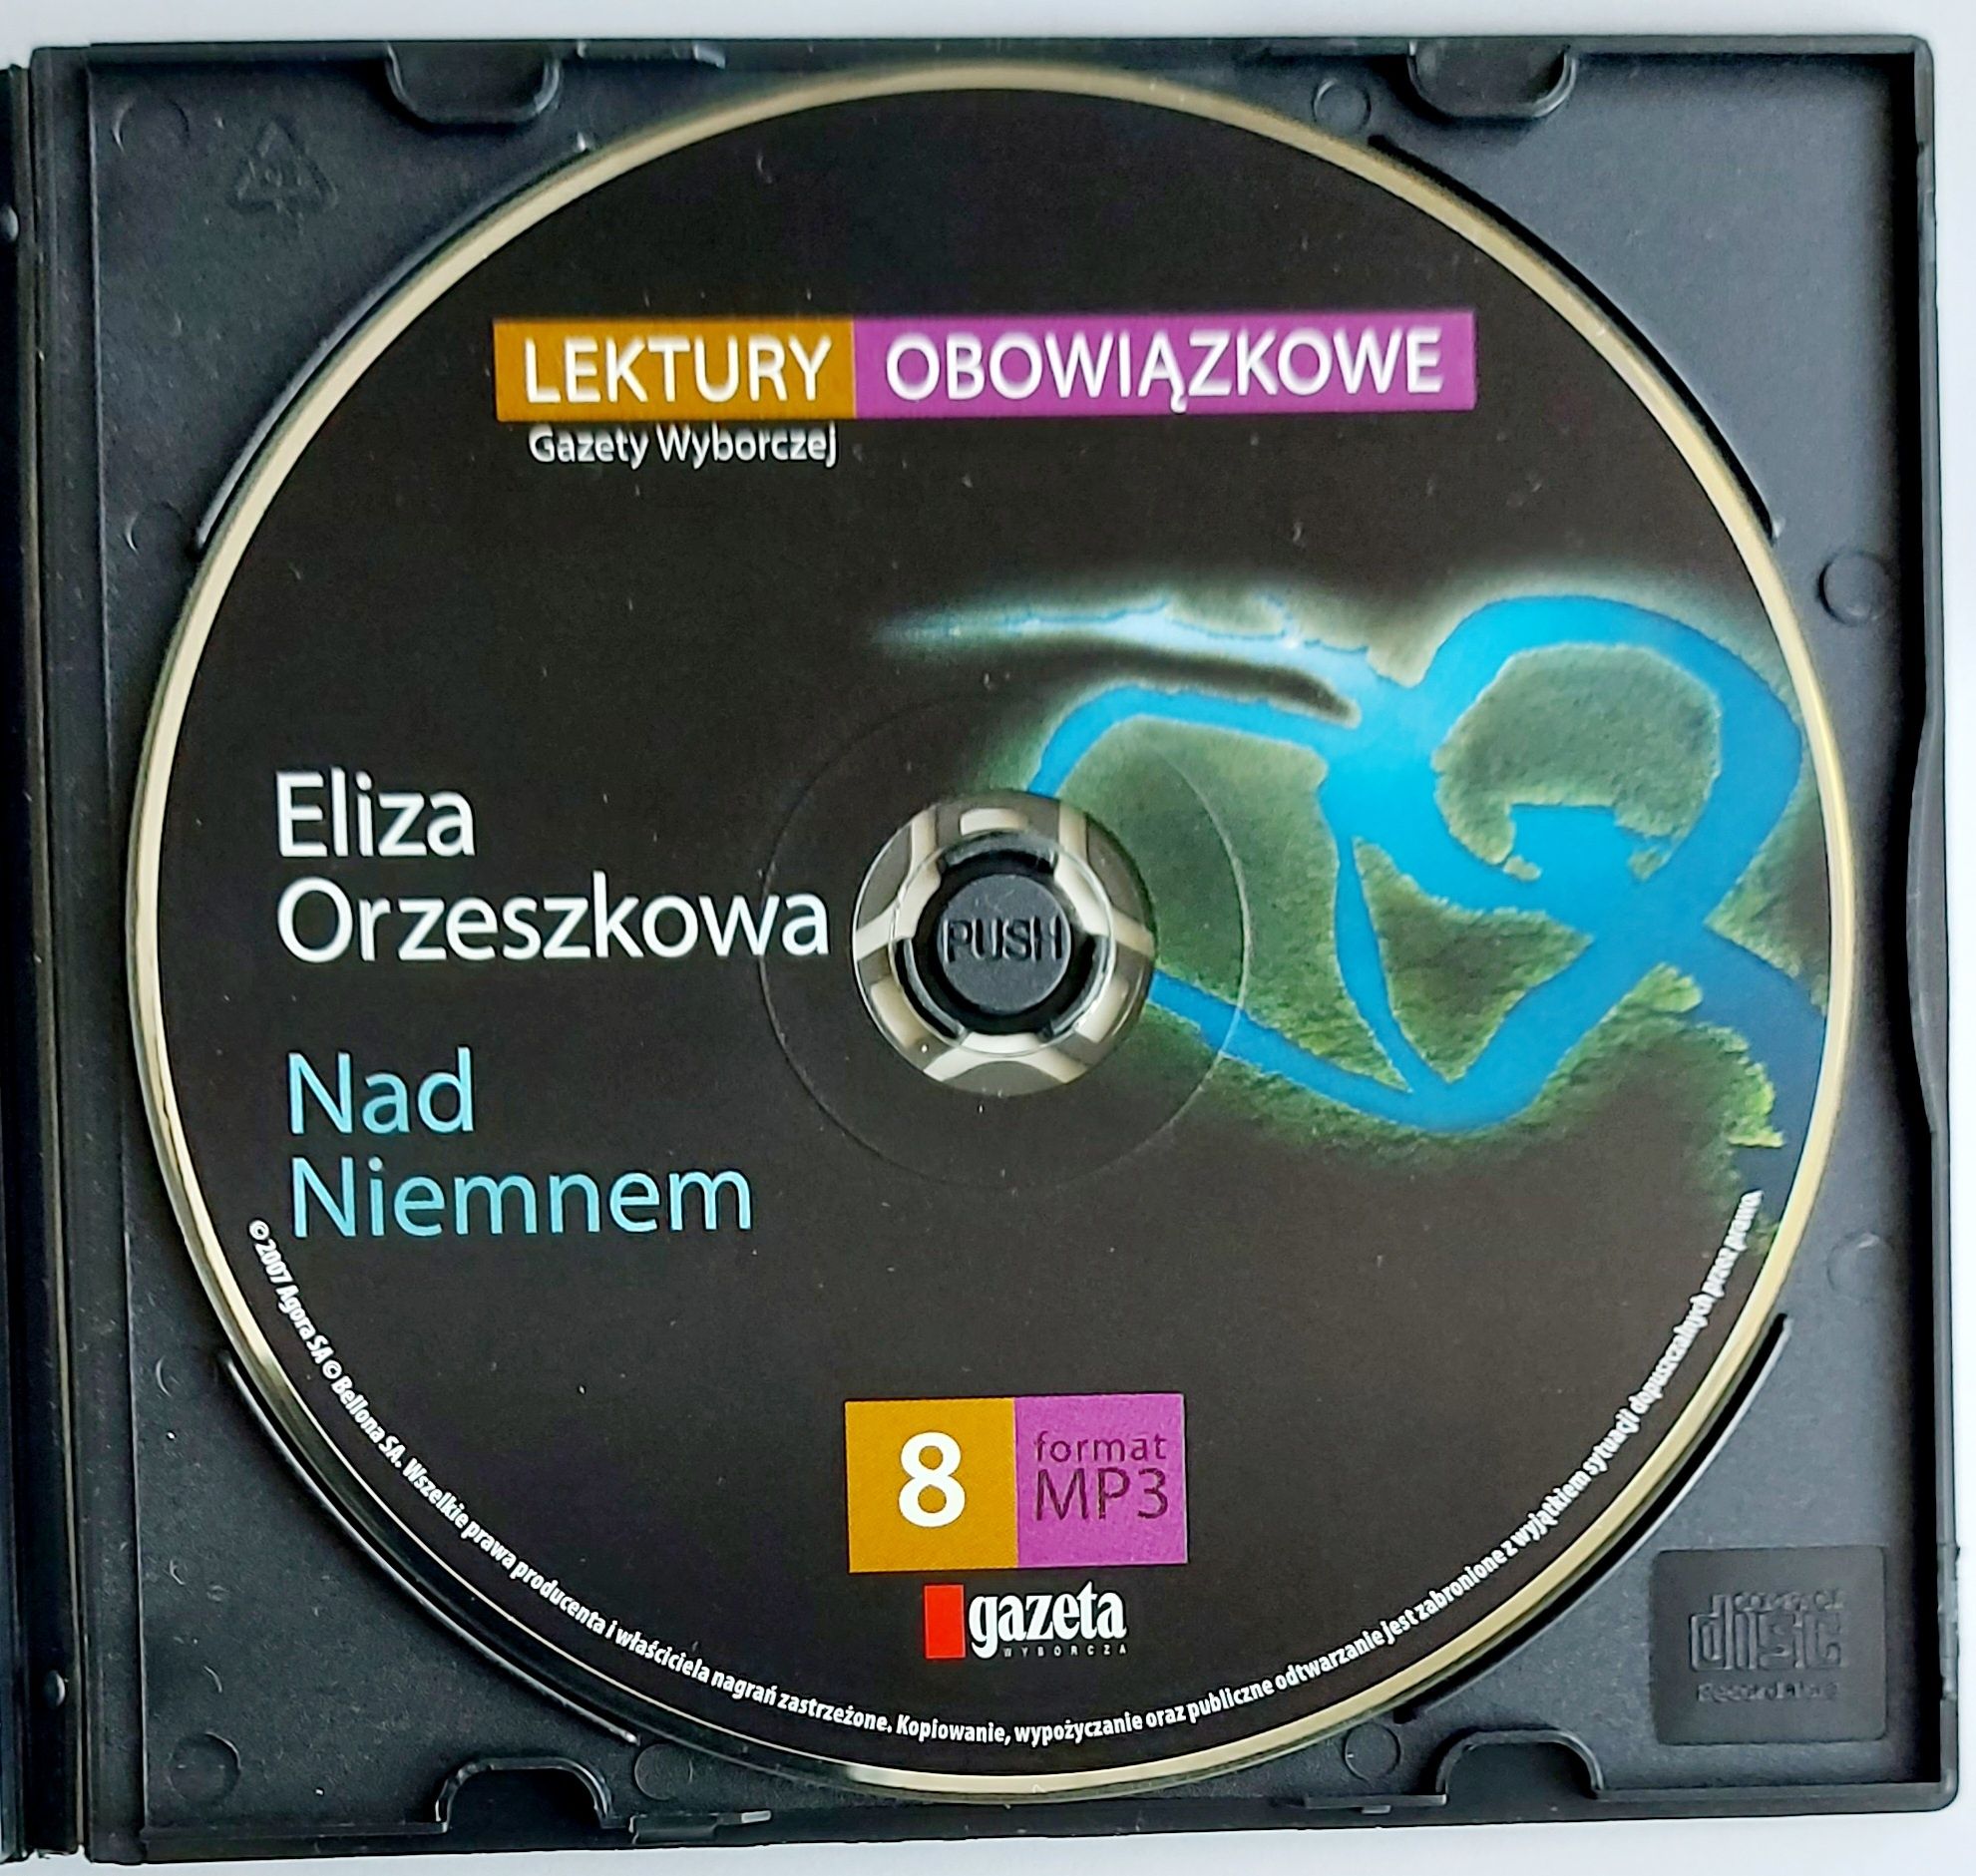 MP3 Eliza Orzeszkowa Nad Niemnem